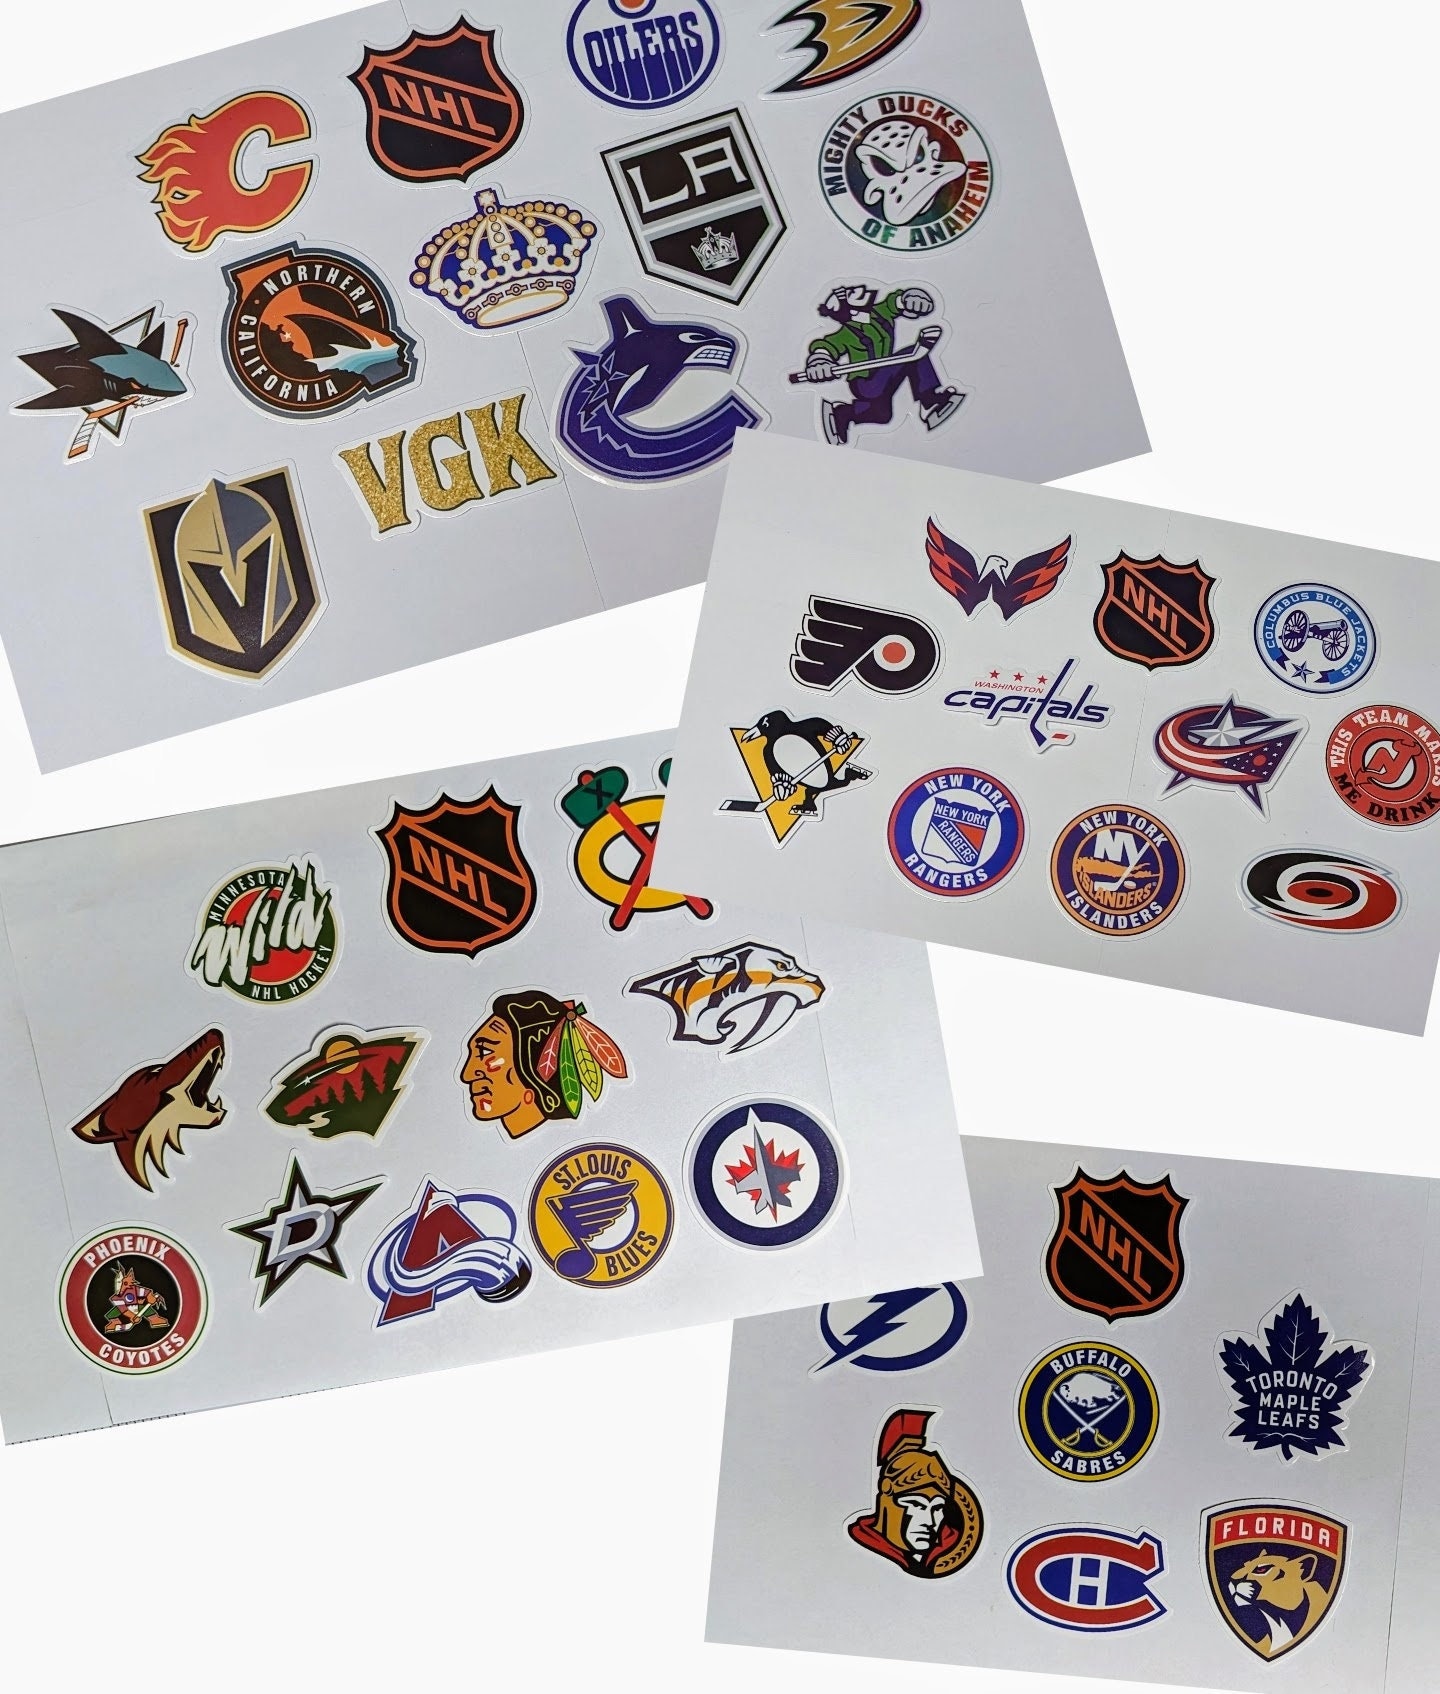 atlanta thrashers logo  Nhl logos, Hockey logos, Thrasher